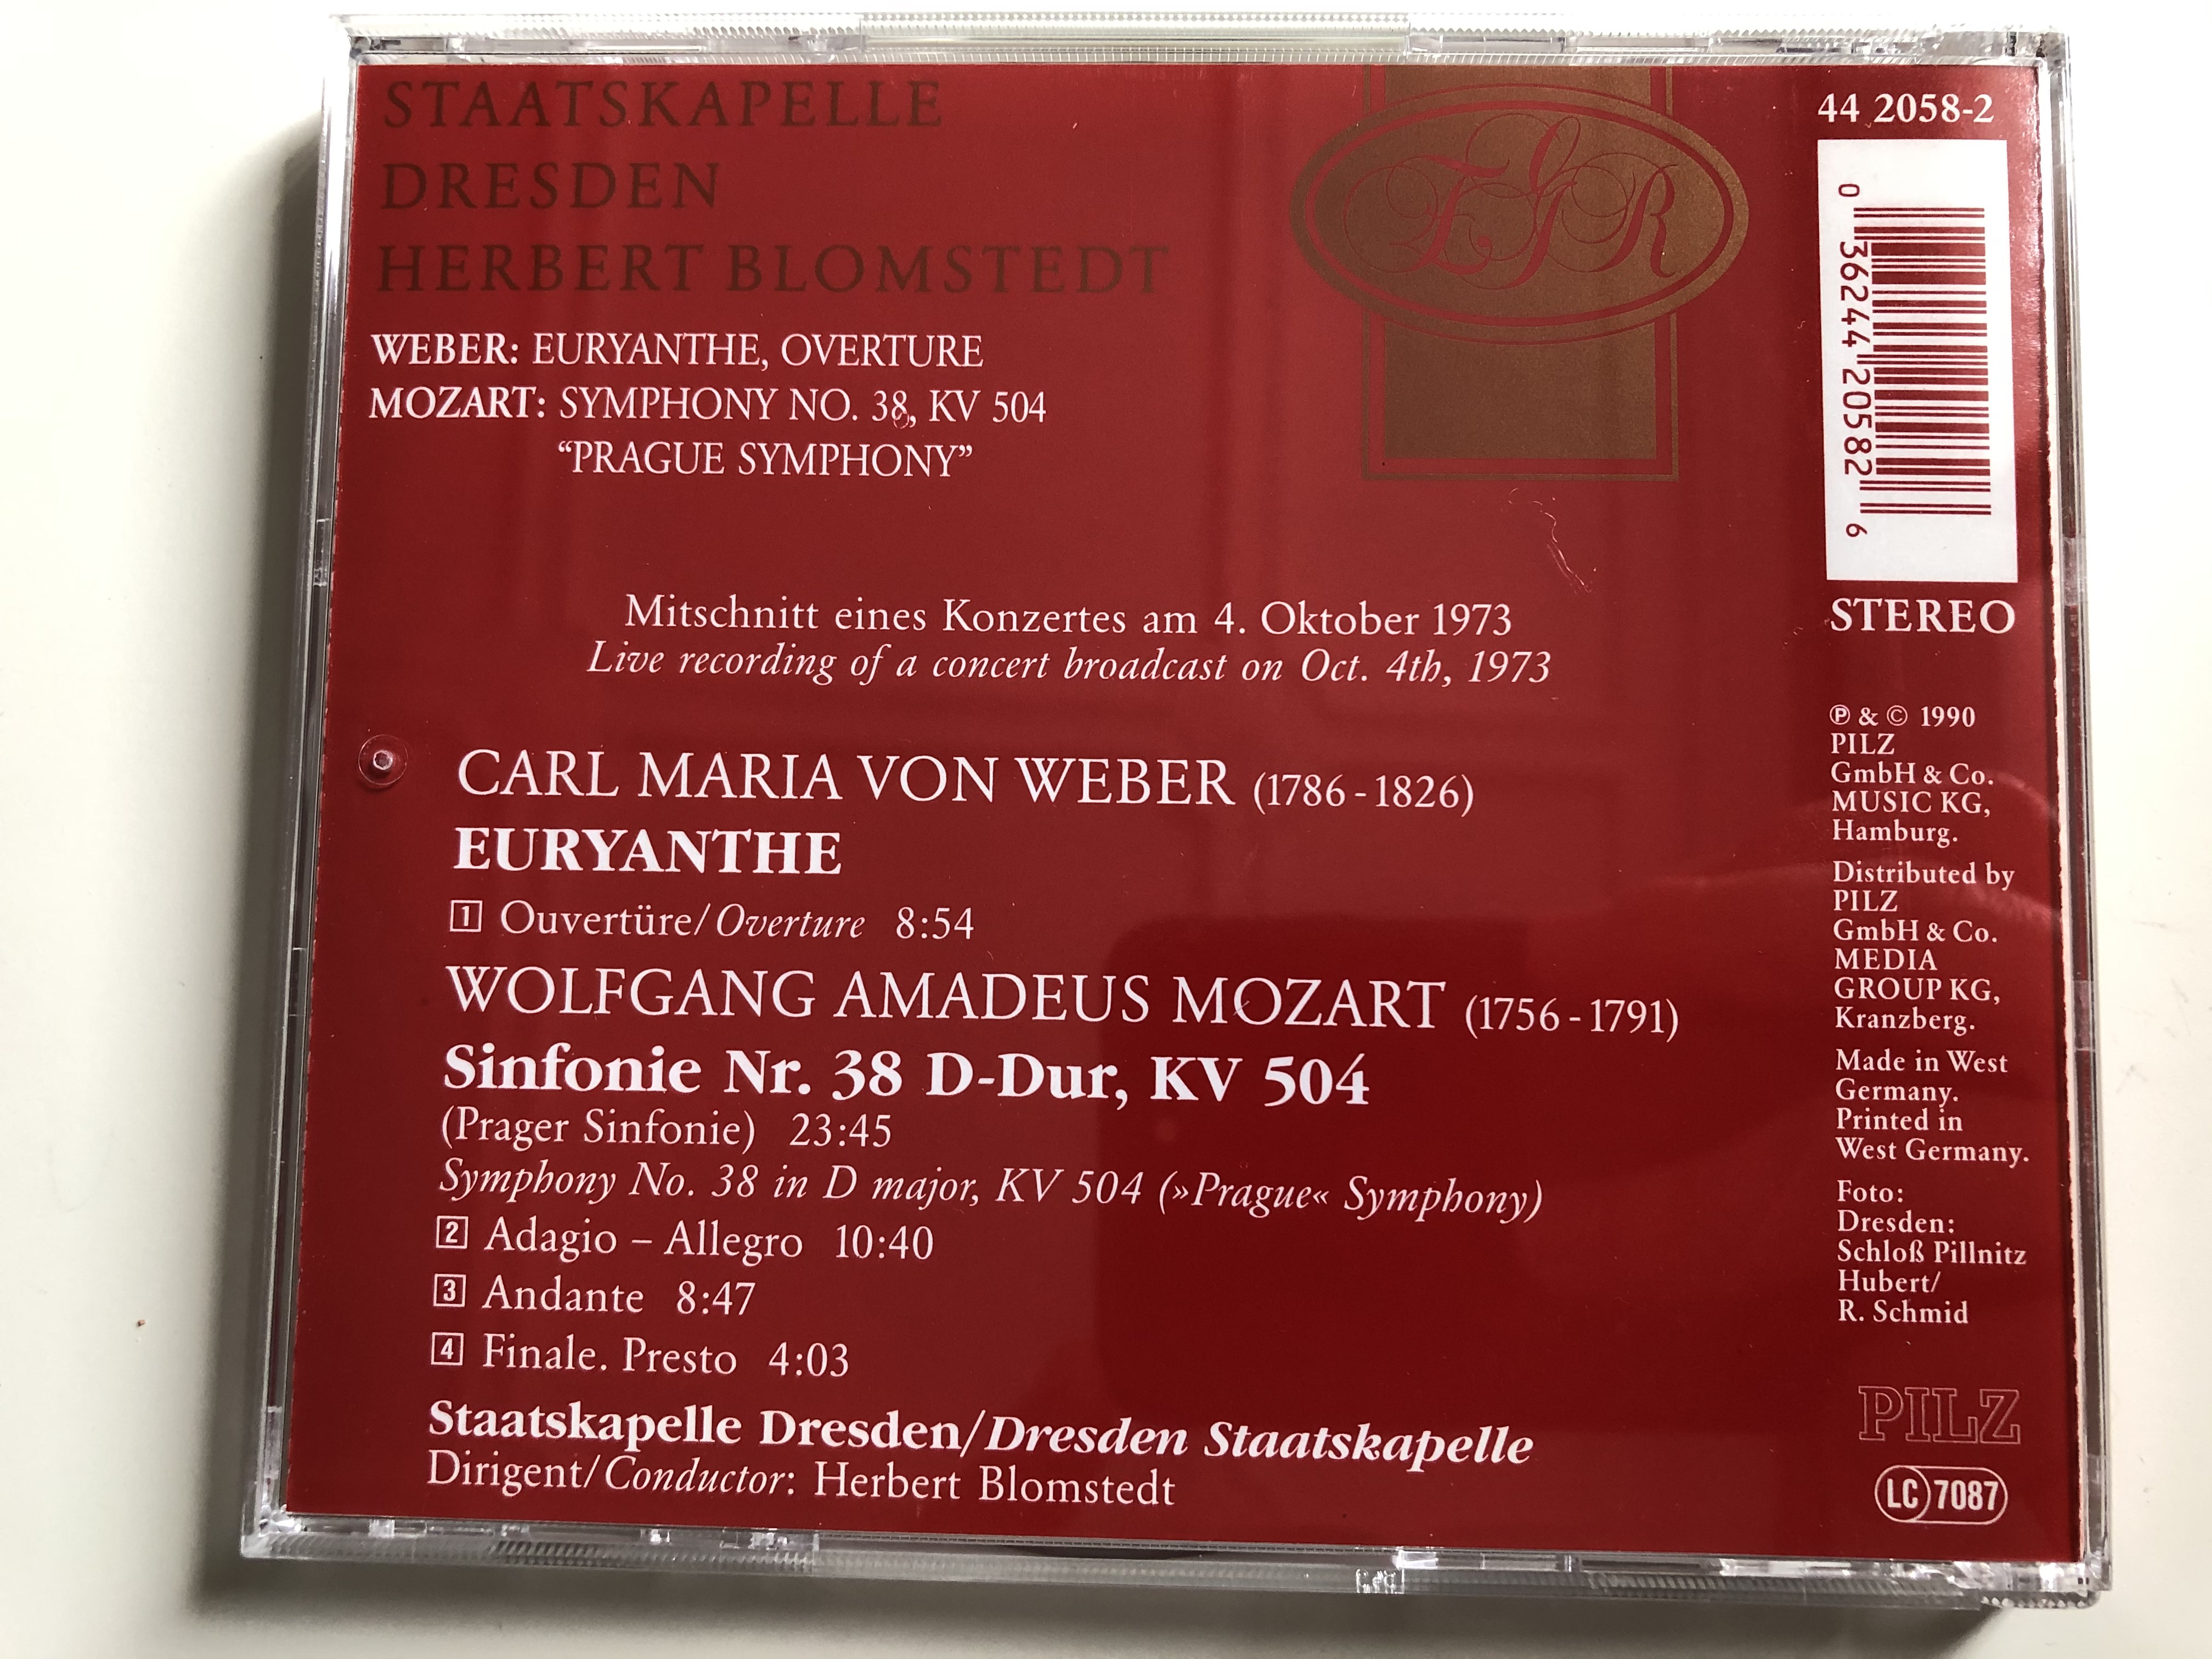 staatskapelle-dresden-herbert-blomstedt-weber-euryanthe-overture-mozart-symphony-no.-38-kv-504-prague-symphony-pilz-audio-cd-1990-stereo-44-2058-2-7-.jpg